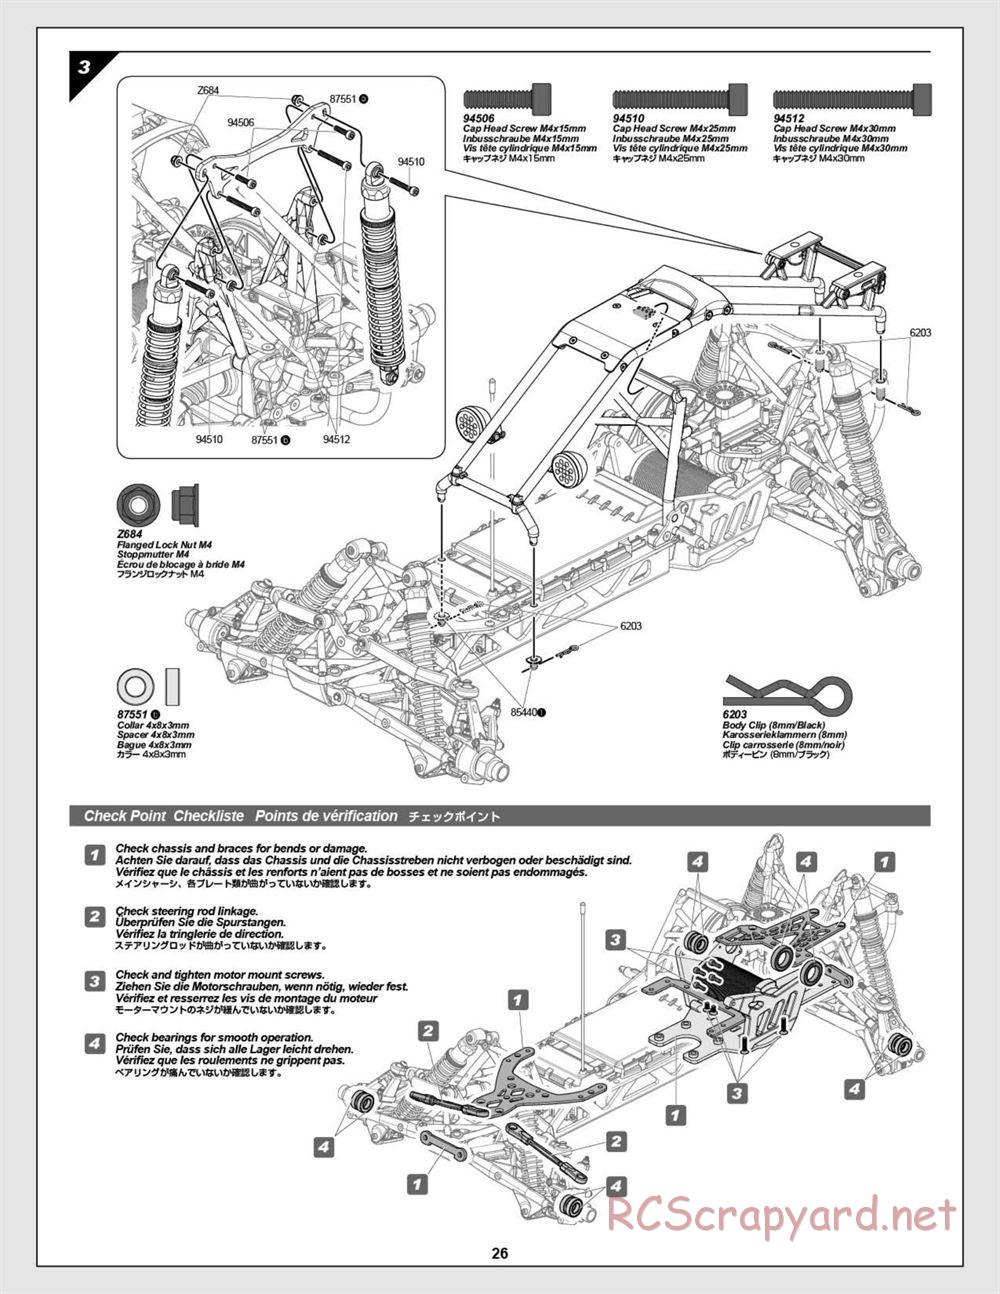 HPI - Baja 5B Flux Buggy - Manual - Page 26